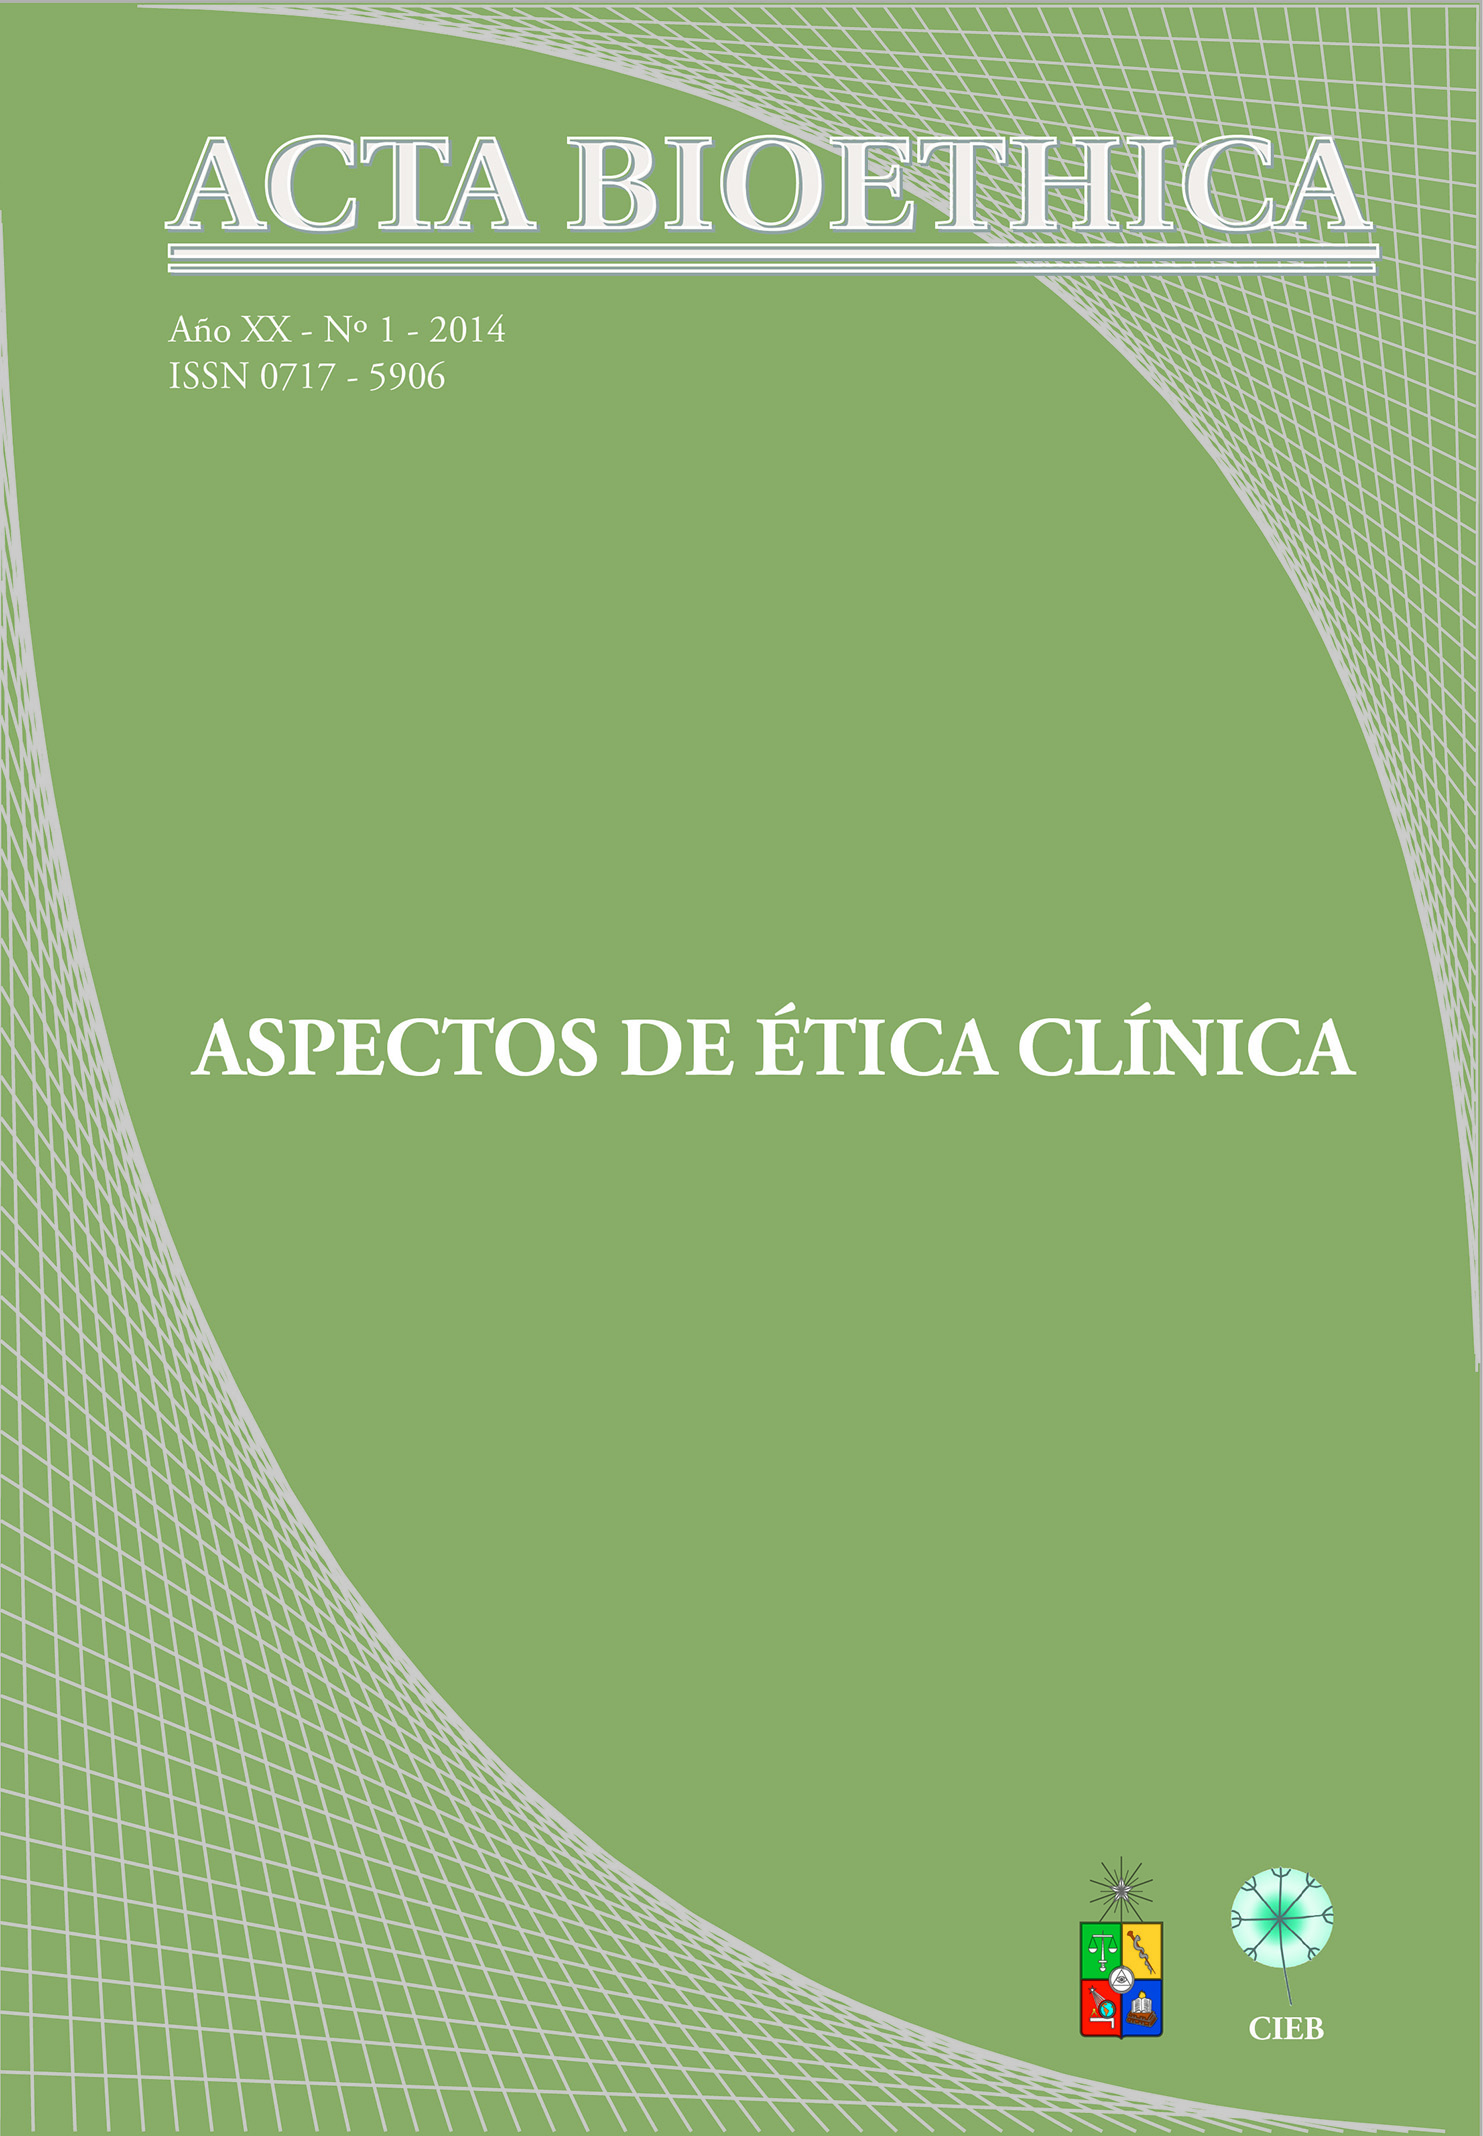 												View Vol. 20 No. 1 (2014): Aspectos de Ética Clínica
											